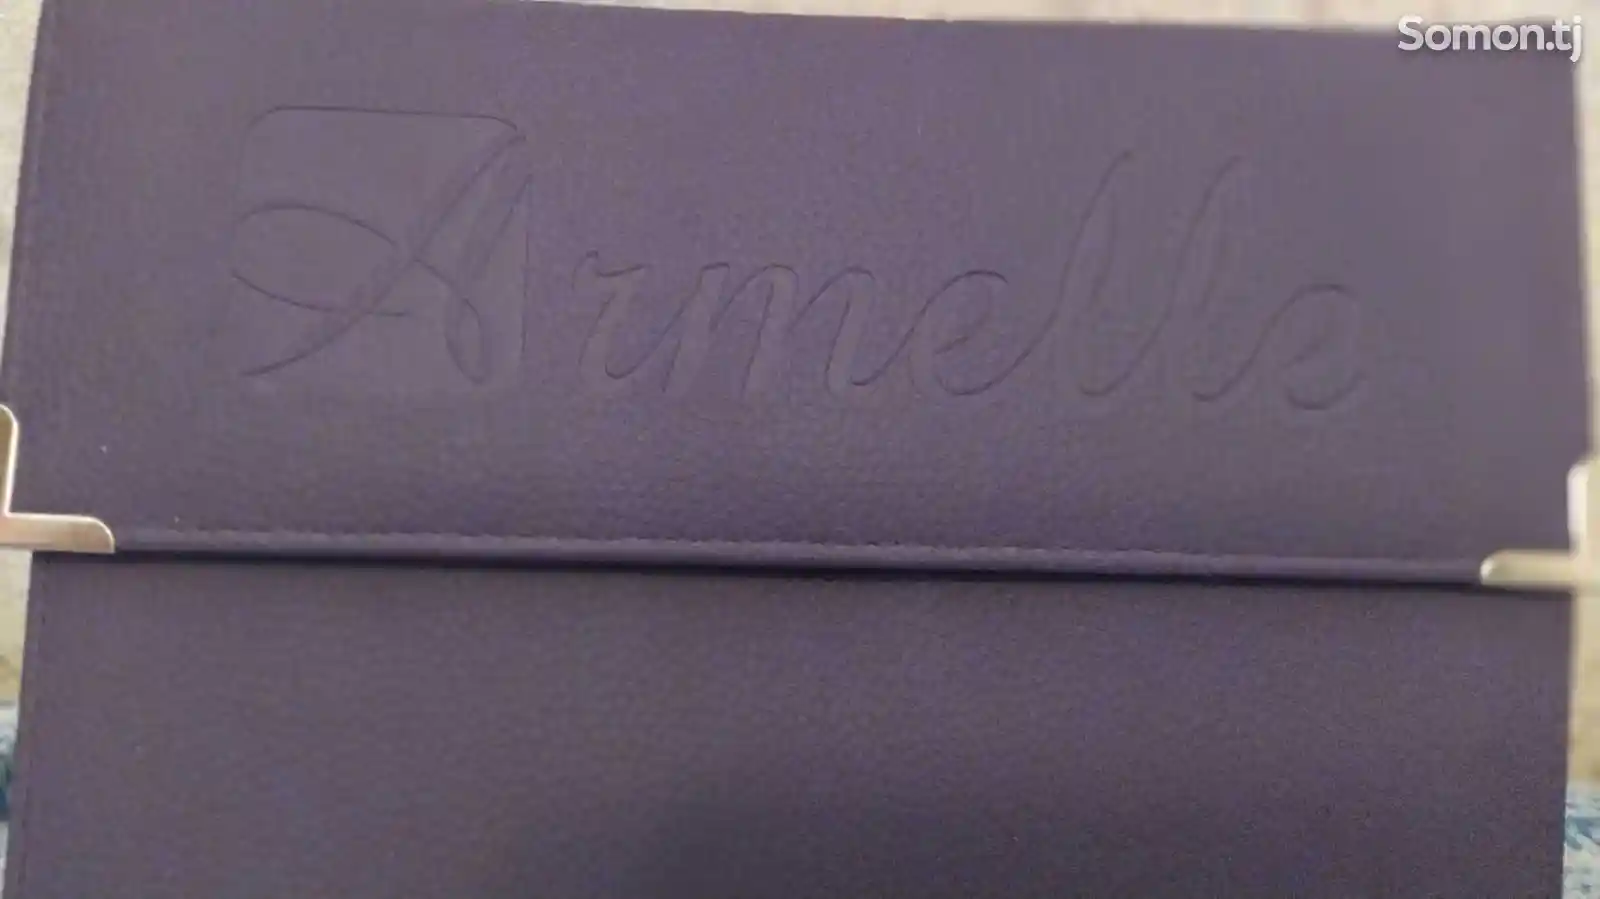 Презентер ароматов от Armelle-1